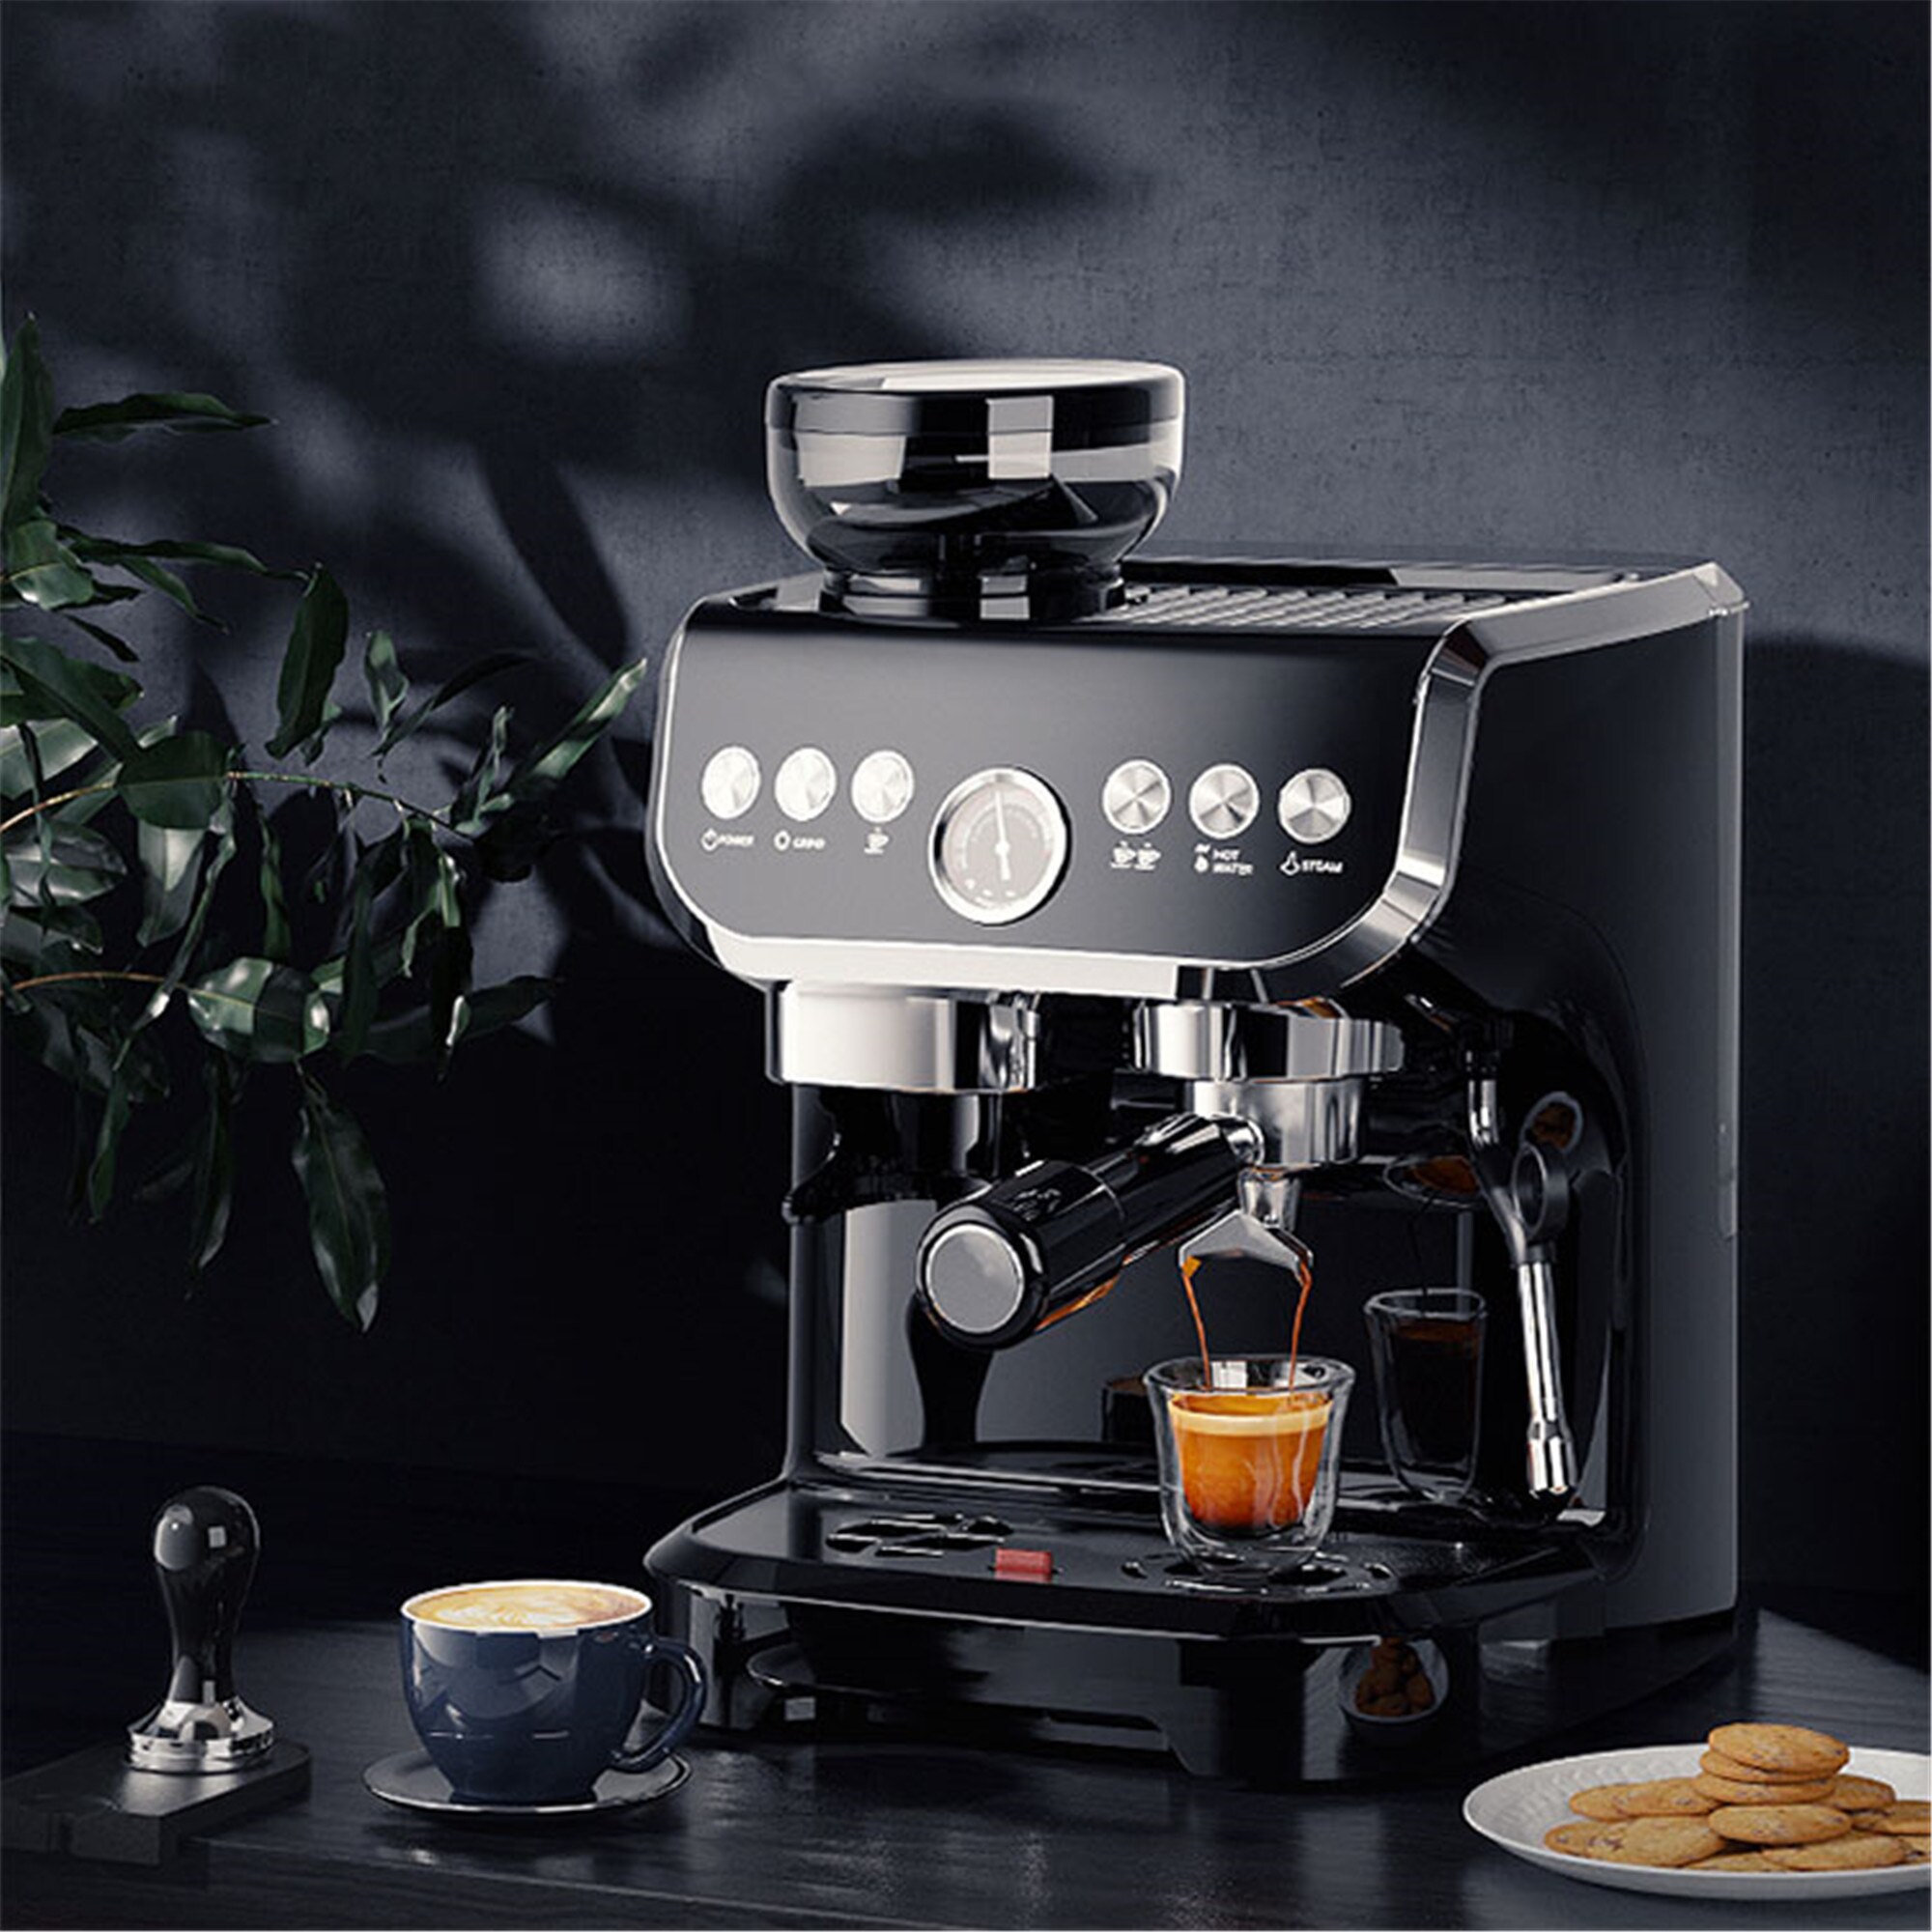 My 5 min GRWM Drink with my Mr. Coffee Frappe Machine